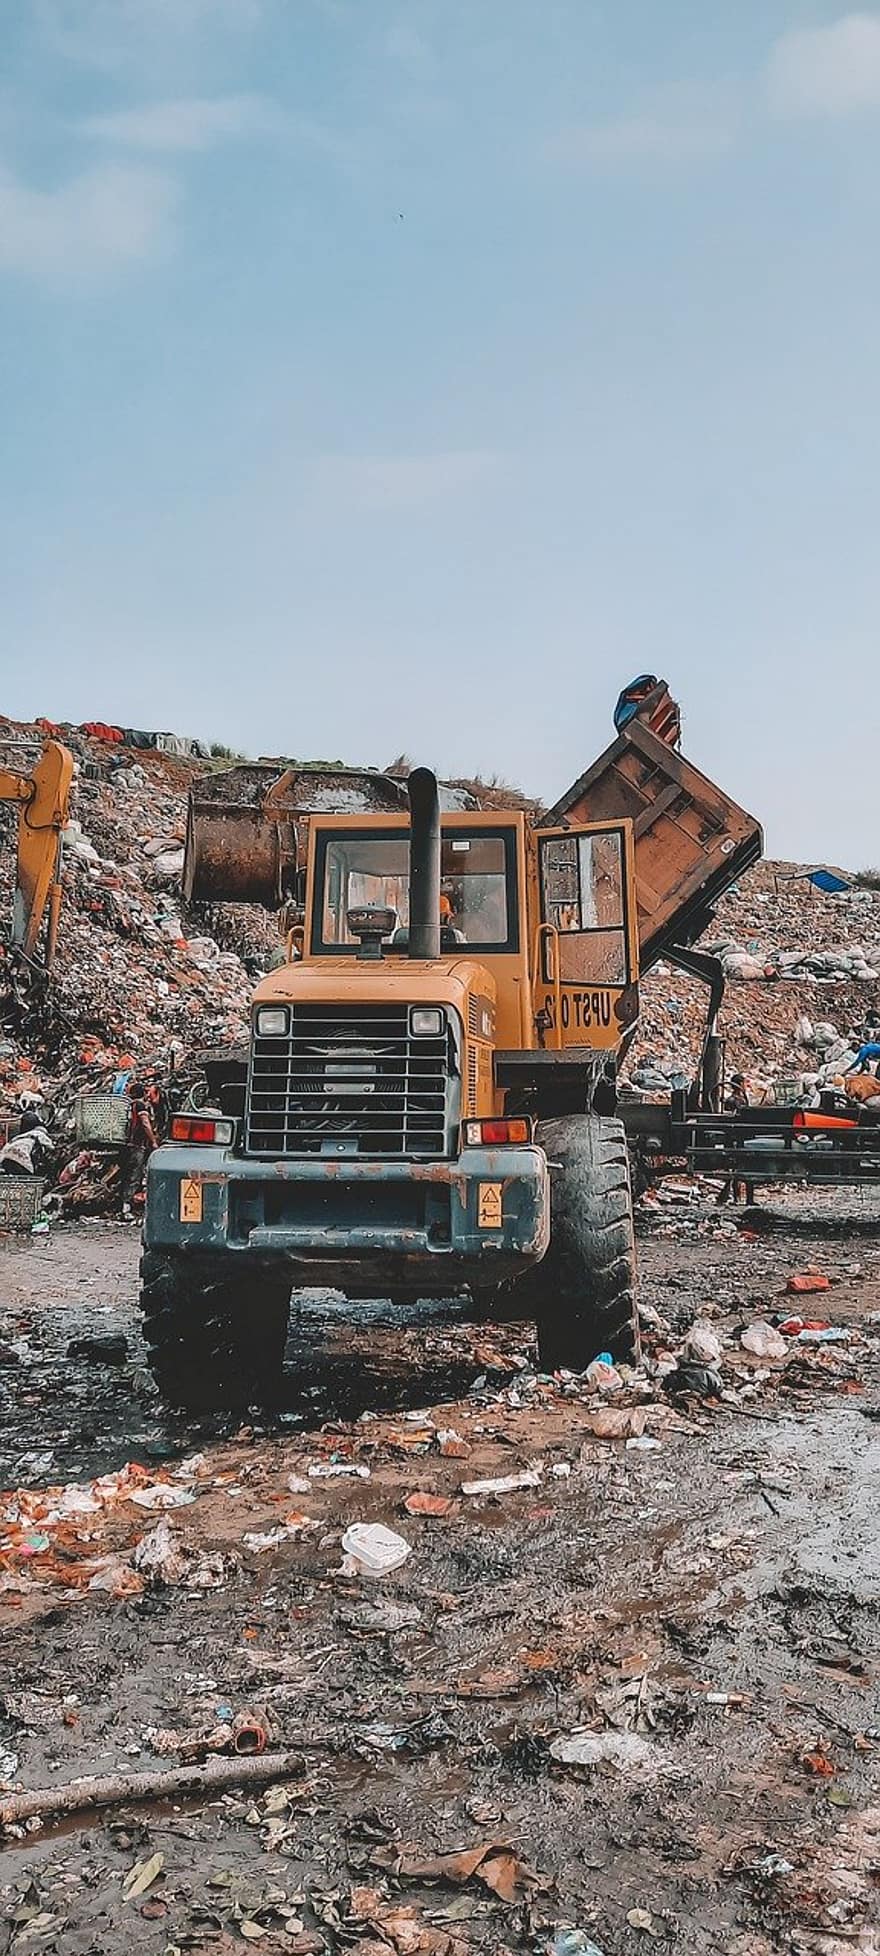 Tractor, Dump Site, Truck, Dump Truck, Vehicle, Trash Dump, Bantar Gebang, Indonesia, Trash, Junk, Bantargebang